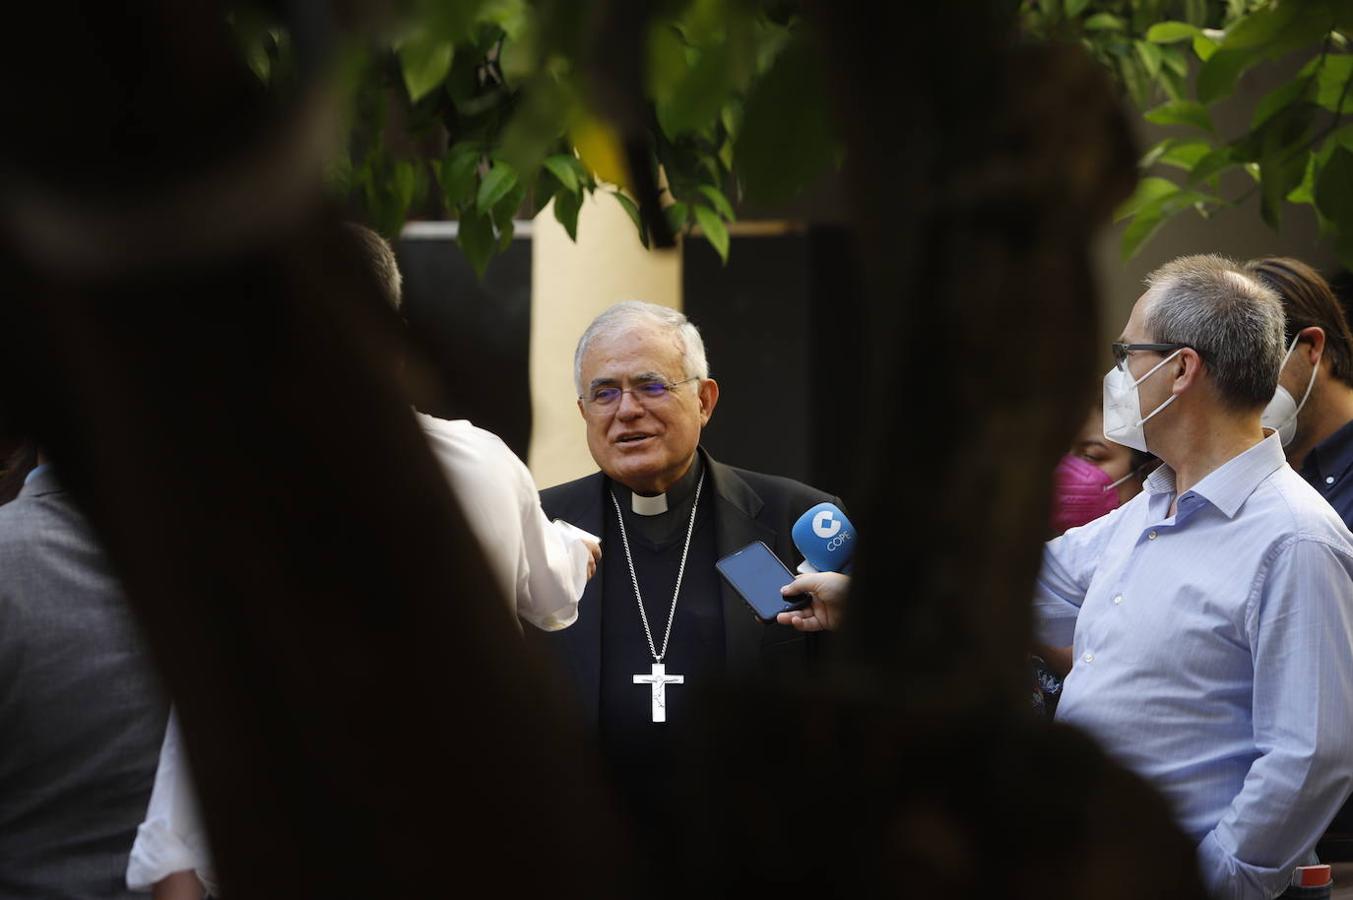 La recepción del obispo de Córdoba a los periodistas, en imágenes